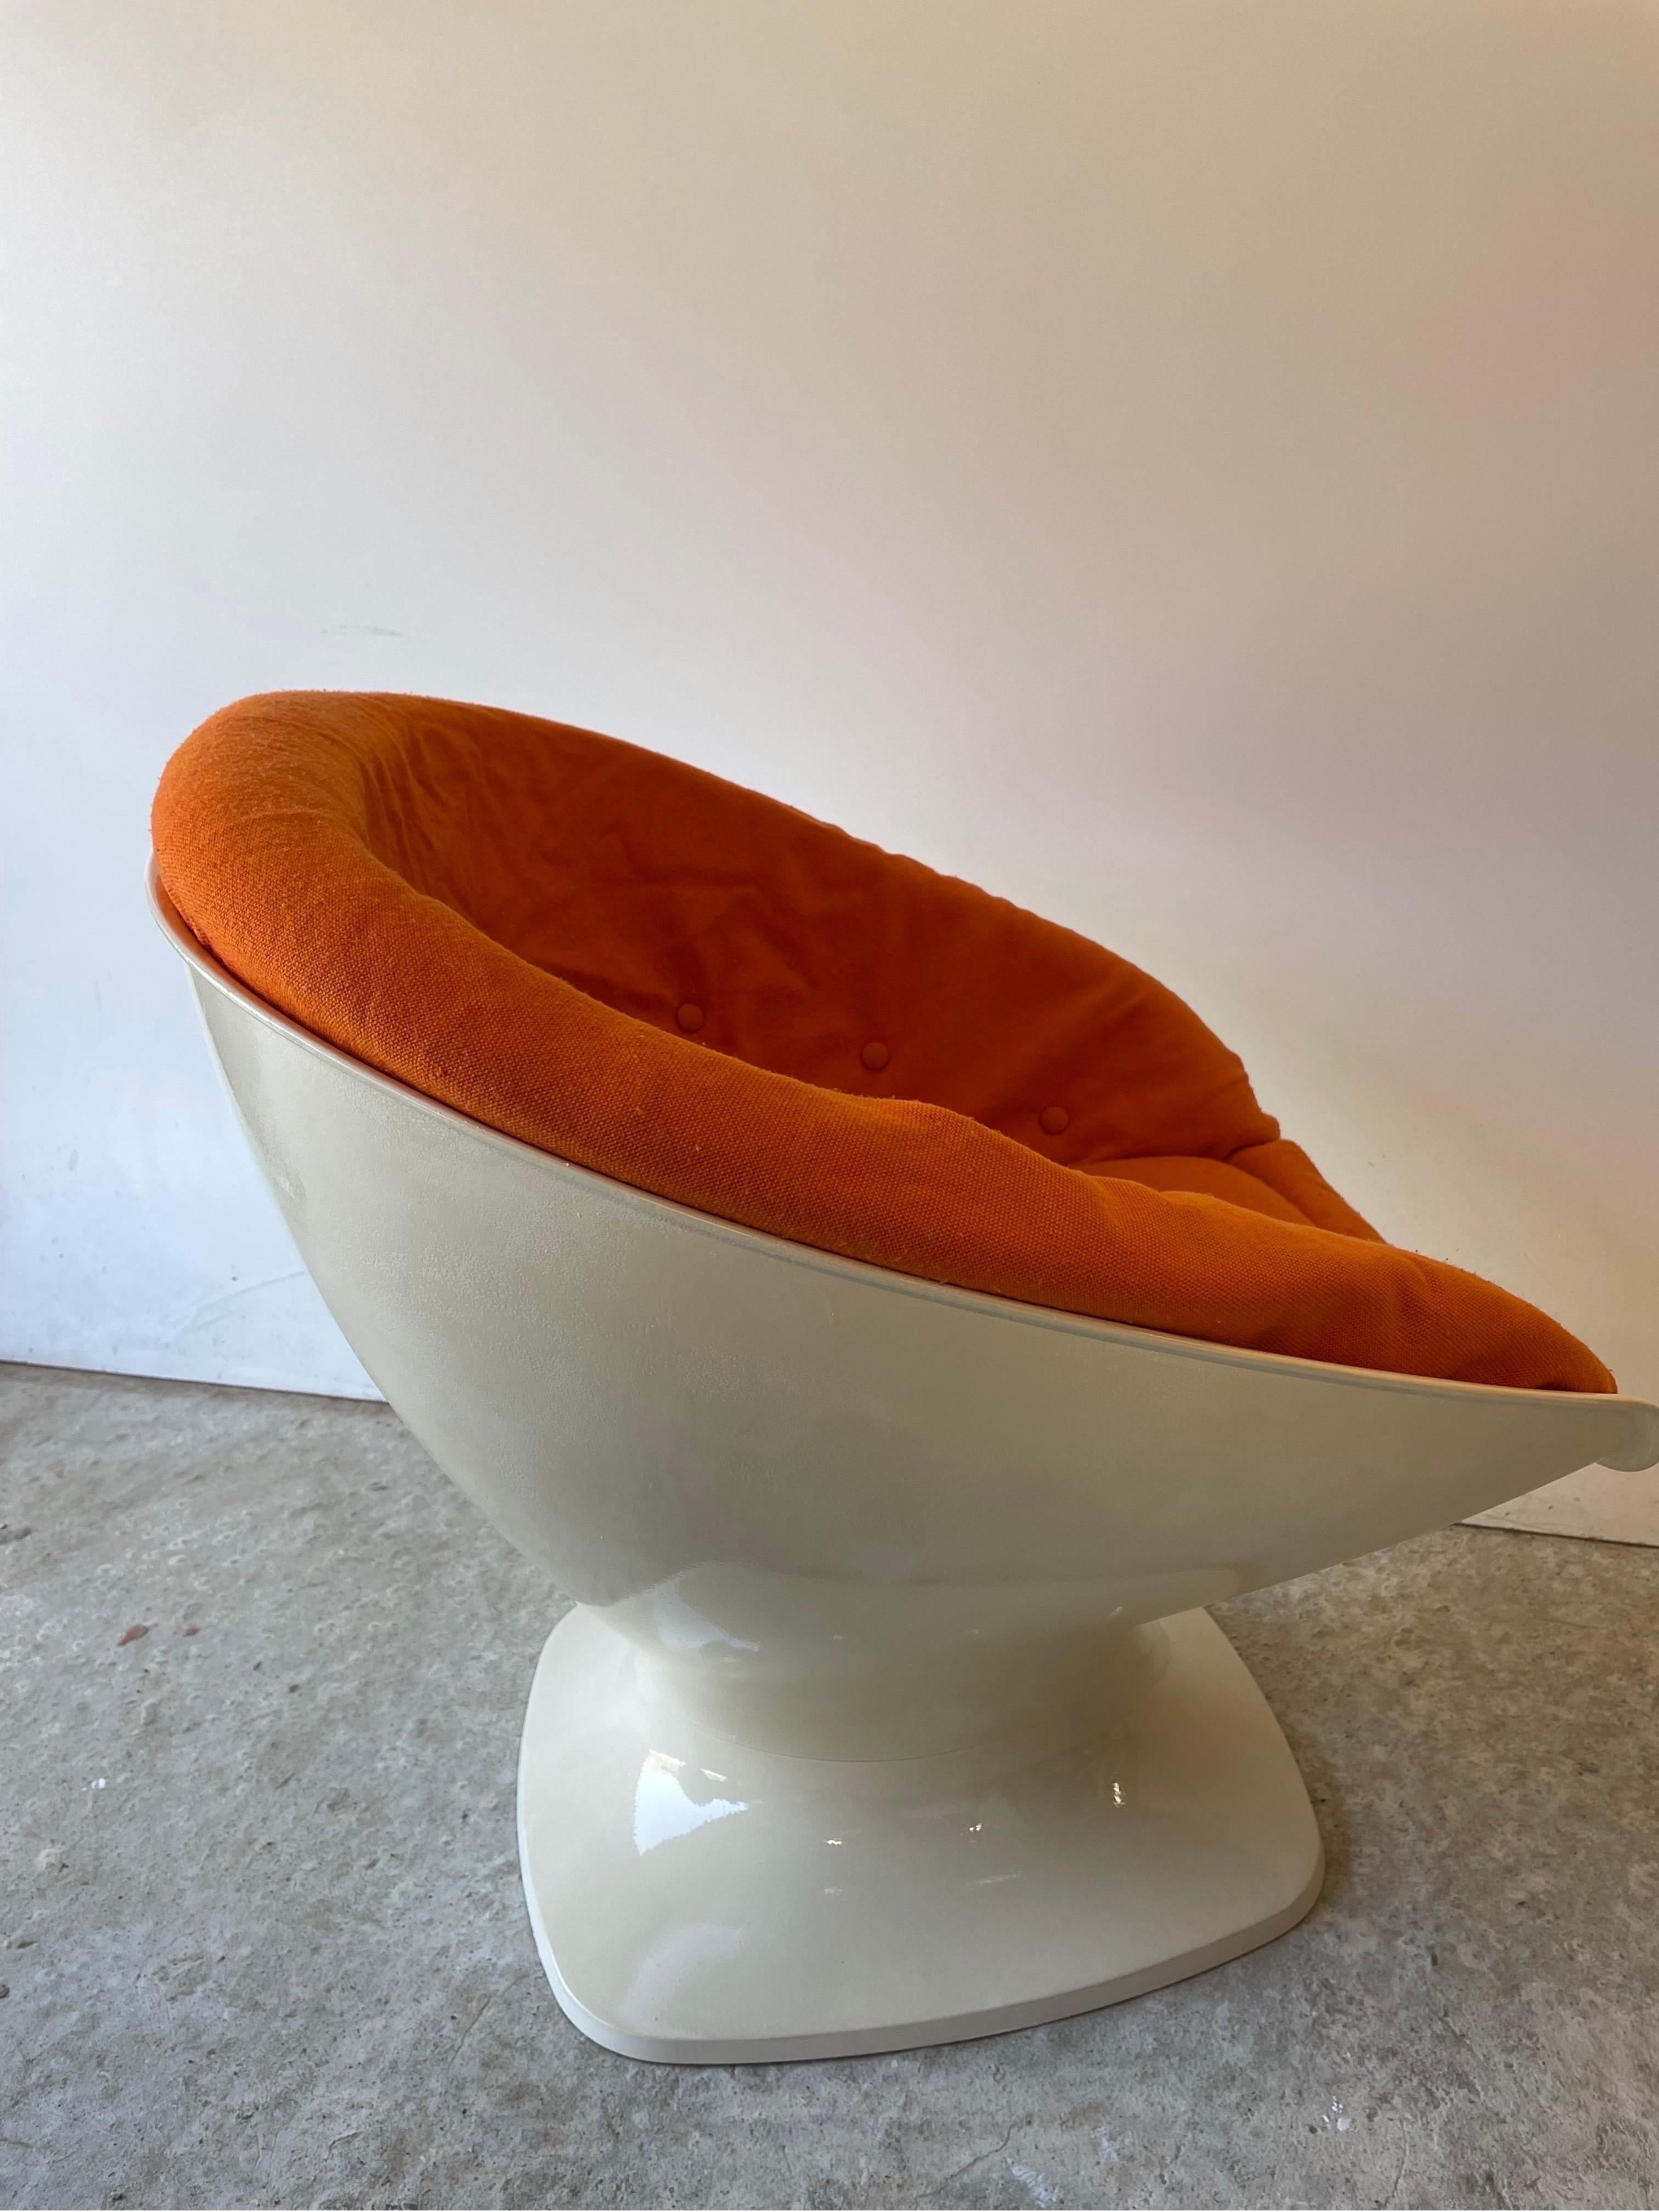 Late 20th Century Raphael Raffel Für Herman Miller: Egg Chair Aus Dem Space Age, 1965 Frankreich